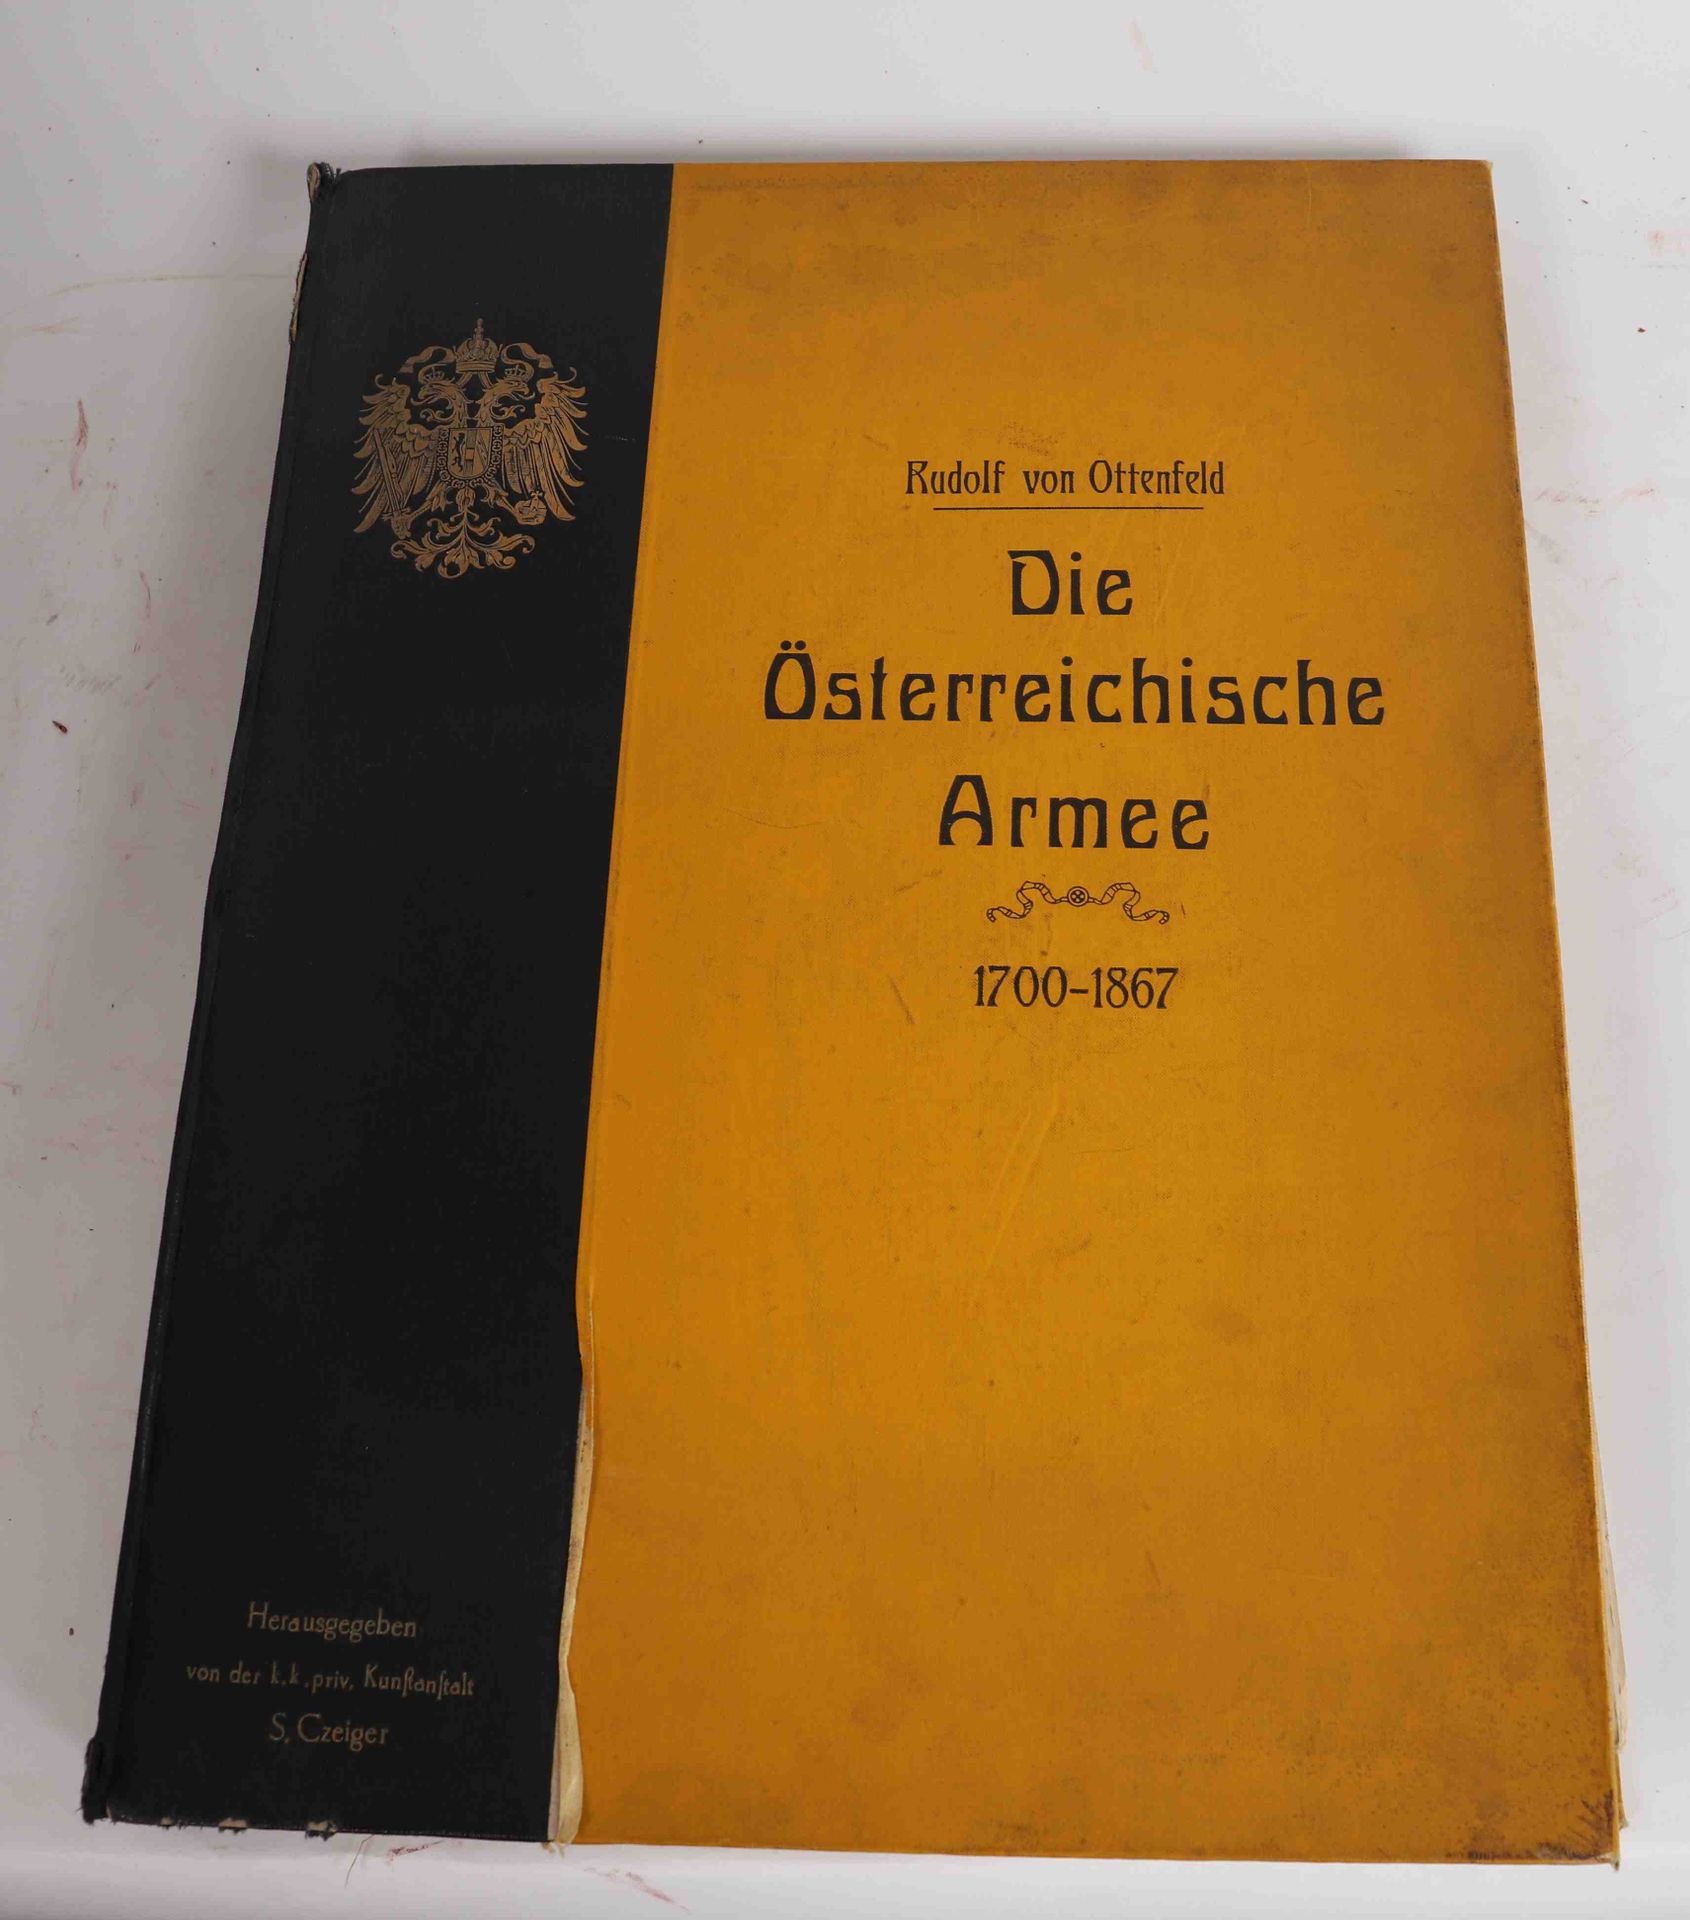 Null "Die Osterreichische Armee 1700-1867" Rudolf VON OTTENFELD

Carpeta de tapa&hellip;